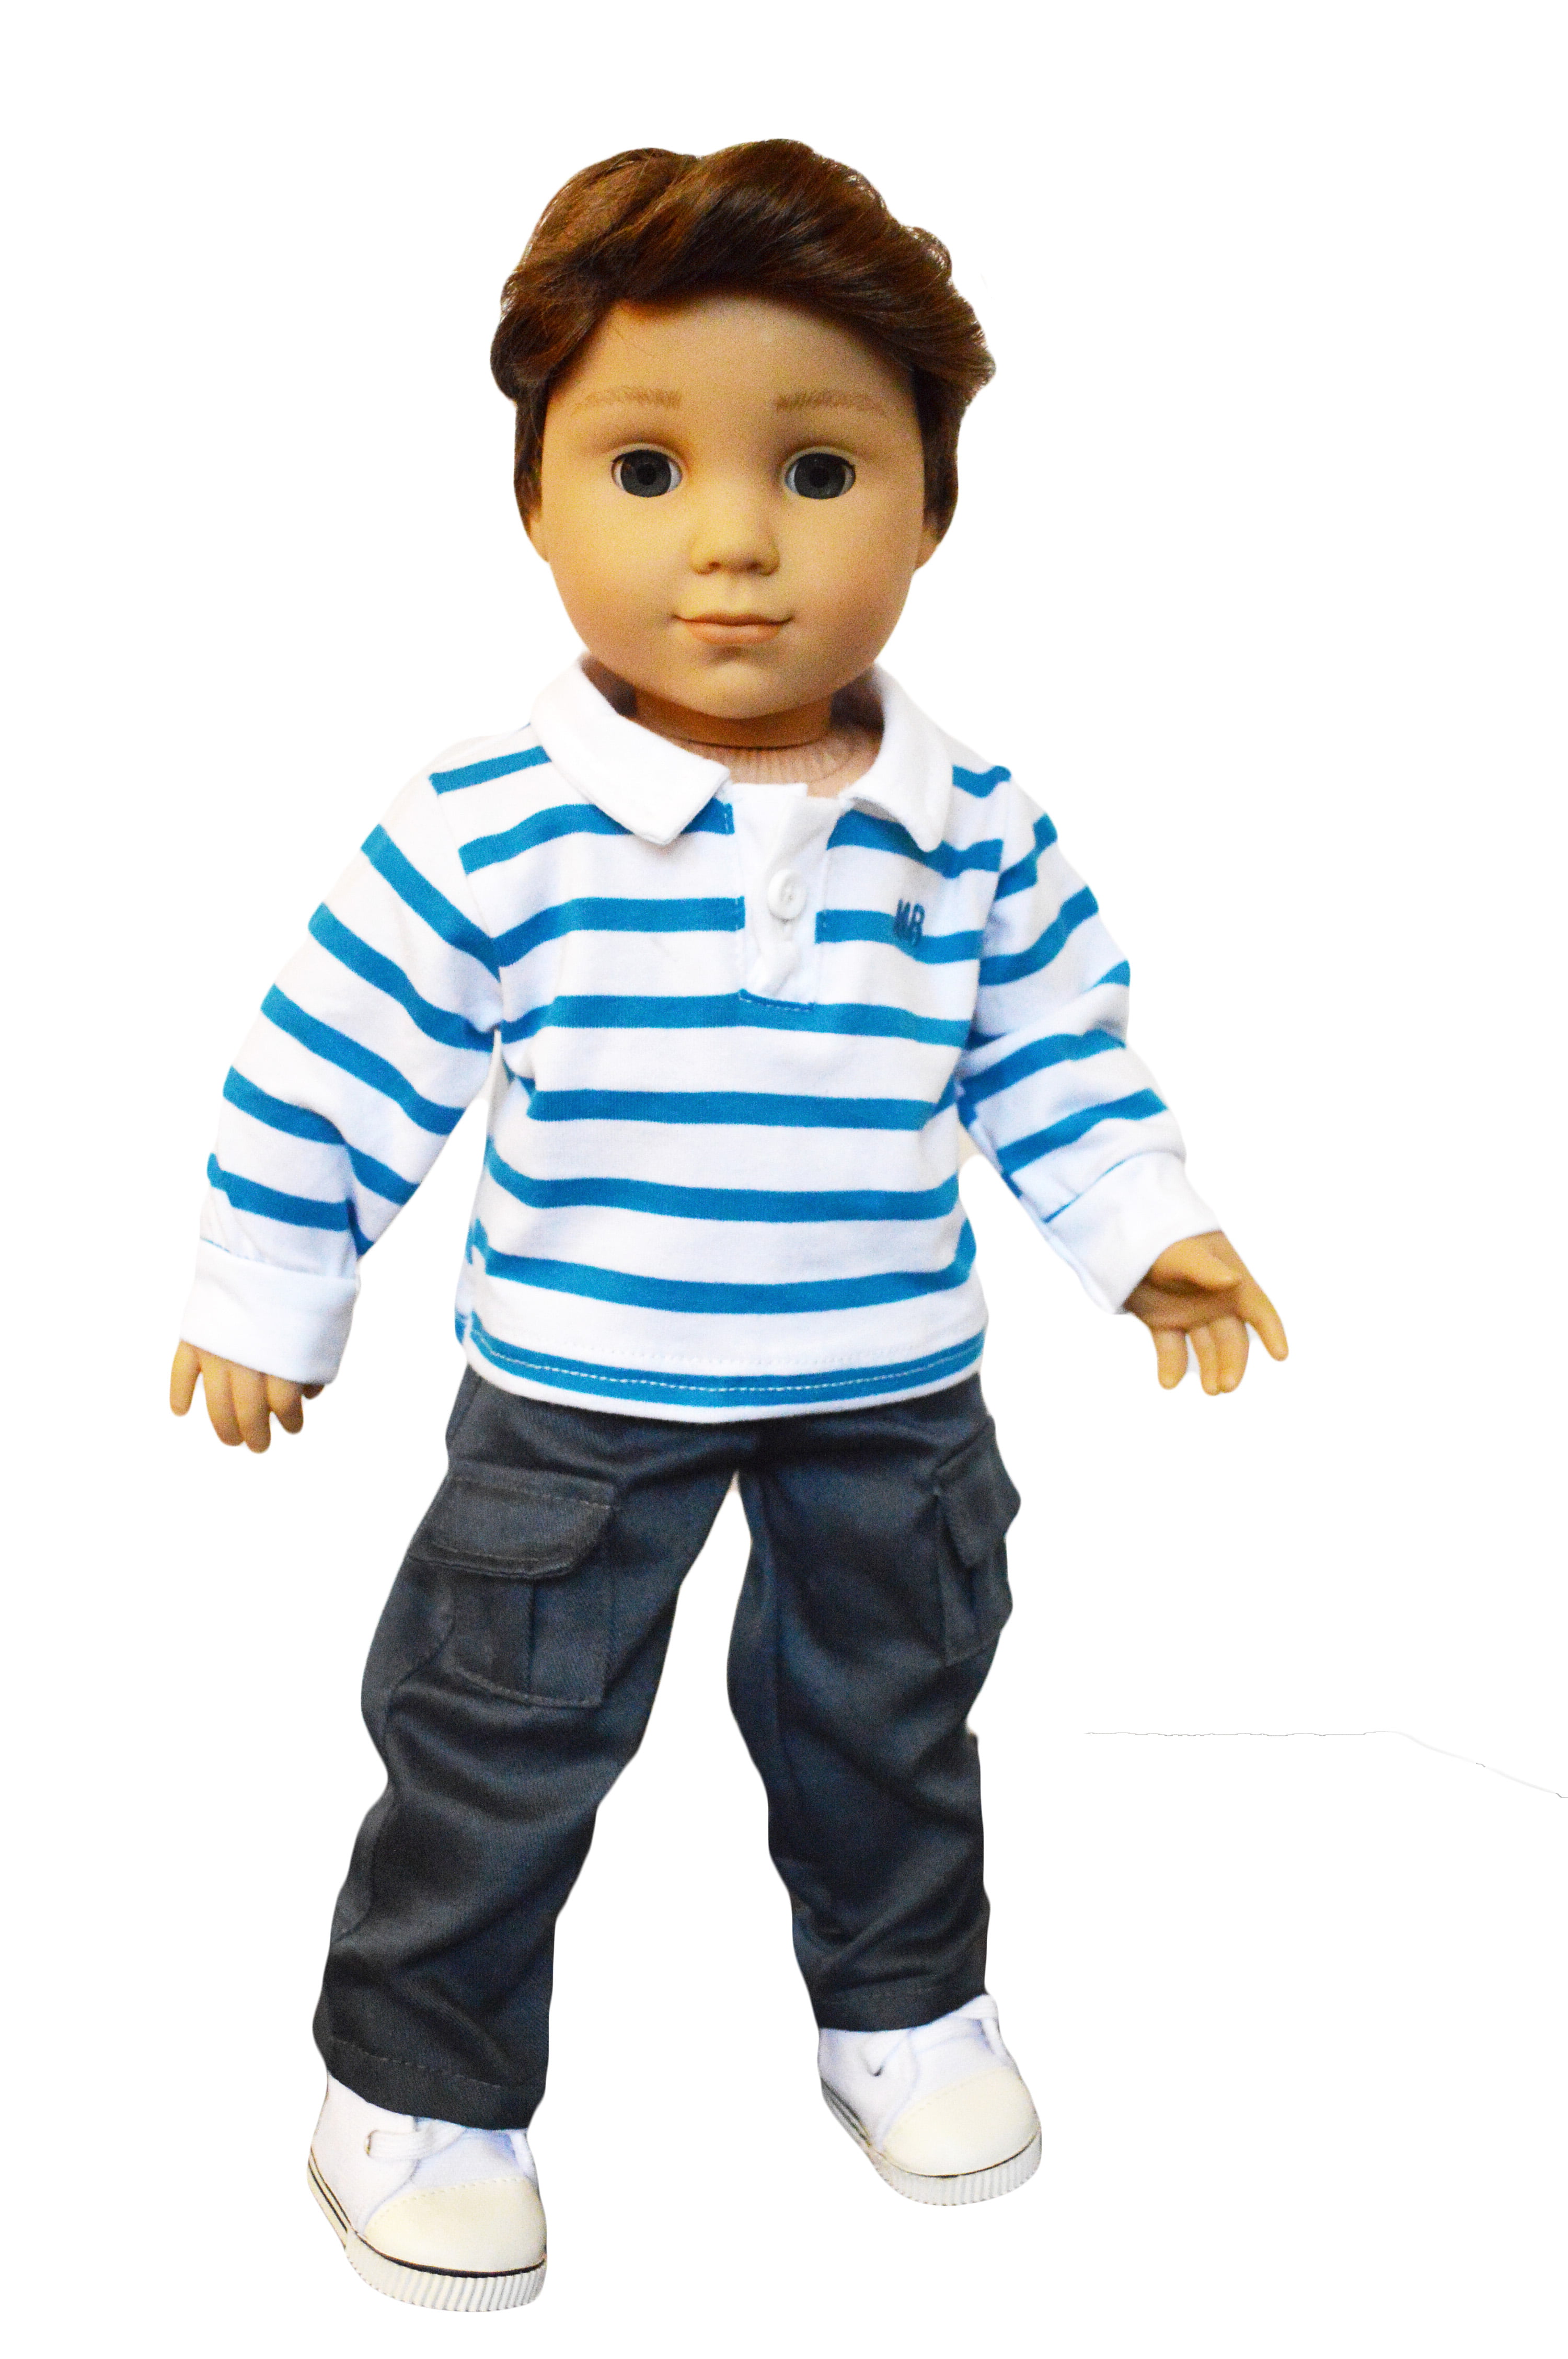 18 inch boy doll clothes walmart